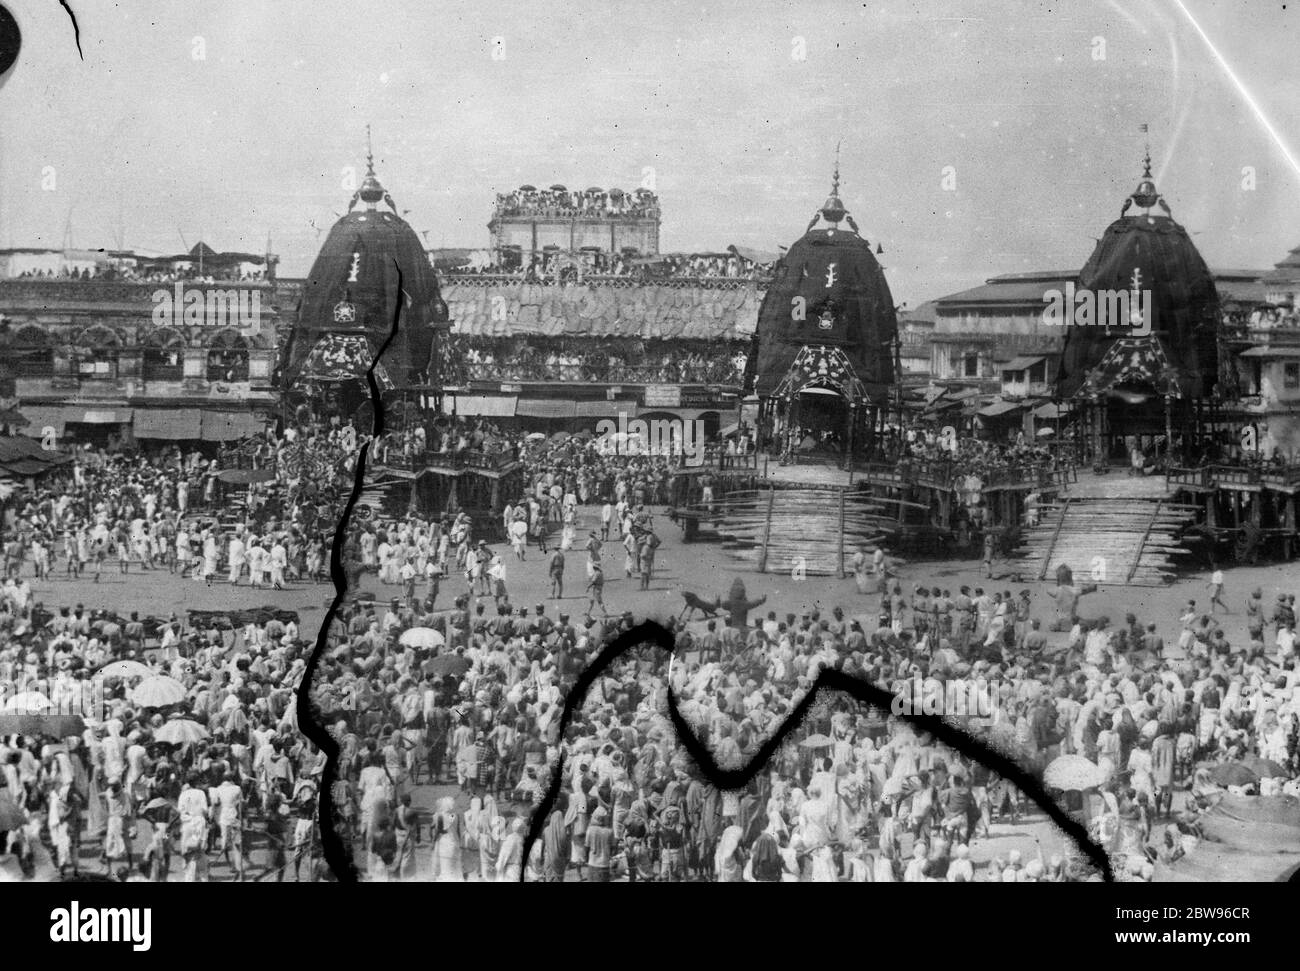 Altes Auto Festival in Puri Indien statt. Der alte Brauch der Zeichnung der Autos von Sri Balaram, Subhandra und Sri Jagannath, durch die Straßen von Puri, an der Ostküste von Indien wurde mit der üblichen alten Zeit Zeremonie beobachtet. Tausende aus allen Teilen Indiens versammelten sich, um das Festival zu beobachten. Die Autos, die während des Festivals durch die Straßen von Puri gezogen. August 1932 Stockfoto